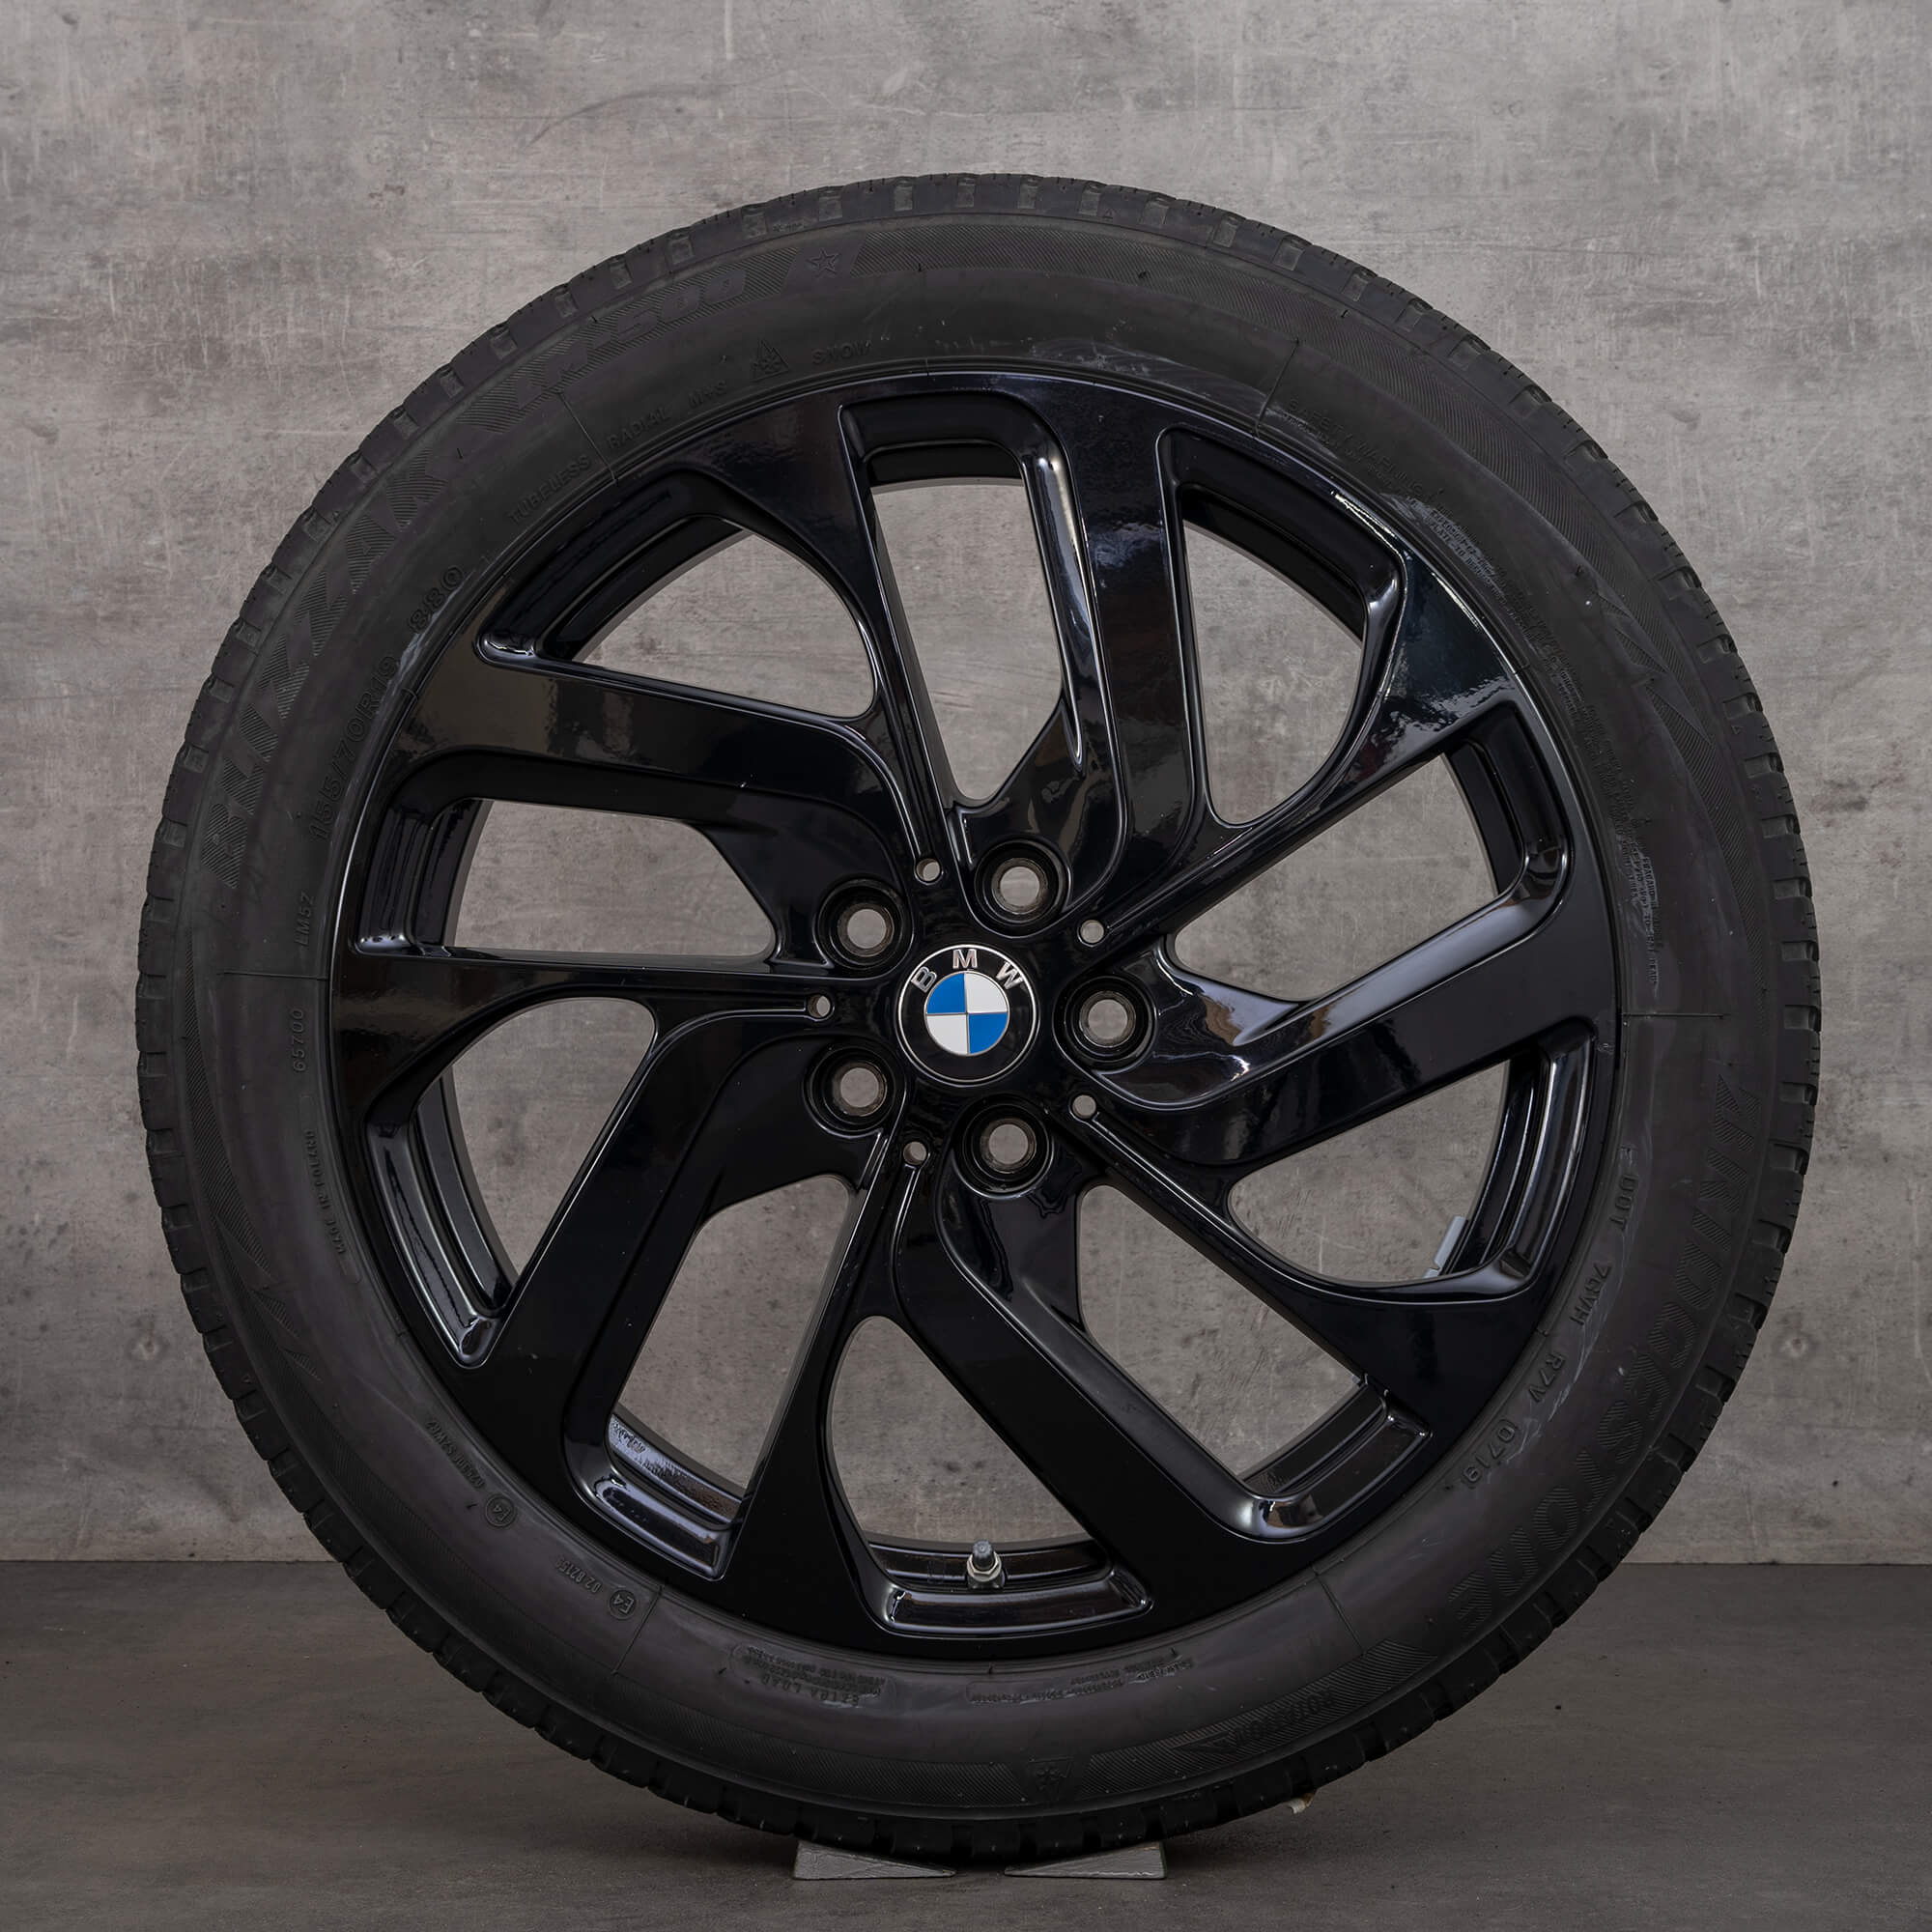 BMW i3s I01 pneus de inverno estilo turbina 428 jantes 19 polegadas 6887937